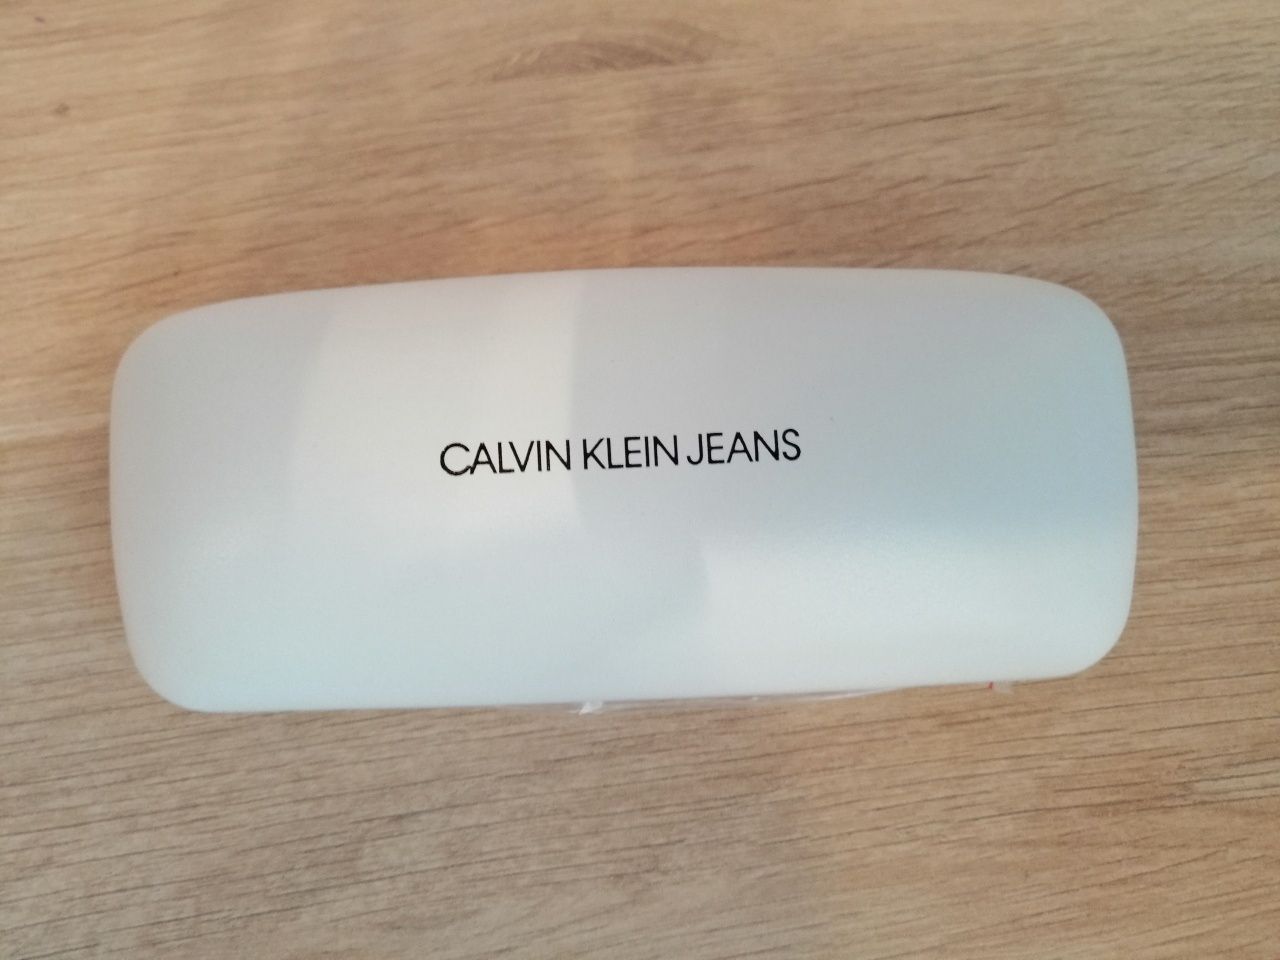 Okulary Calvin Klein